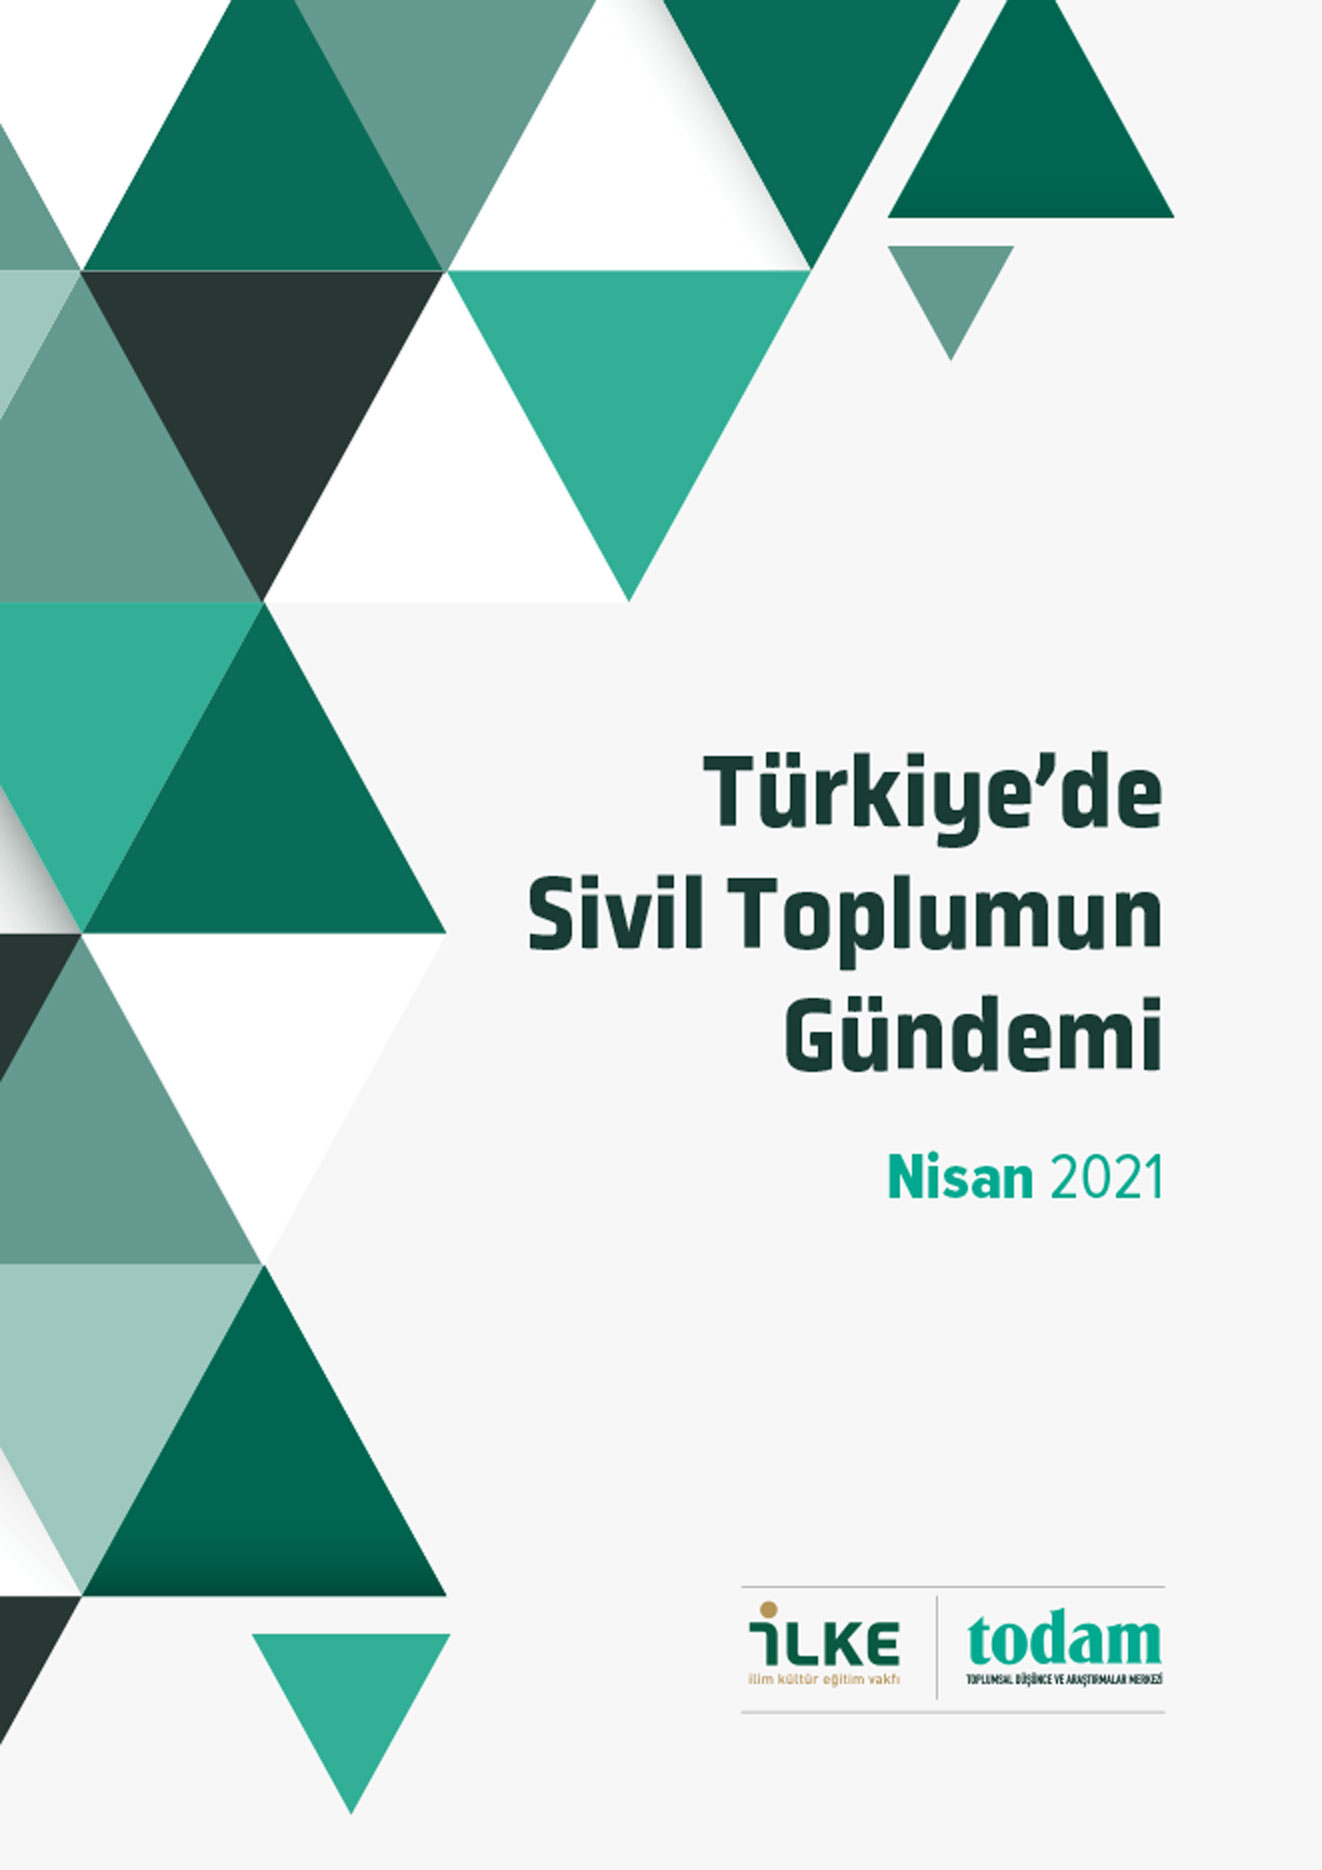 Türkiye'de Sivil Toplumun Gündemi Nisan 2021